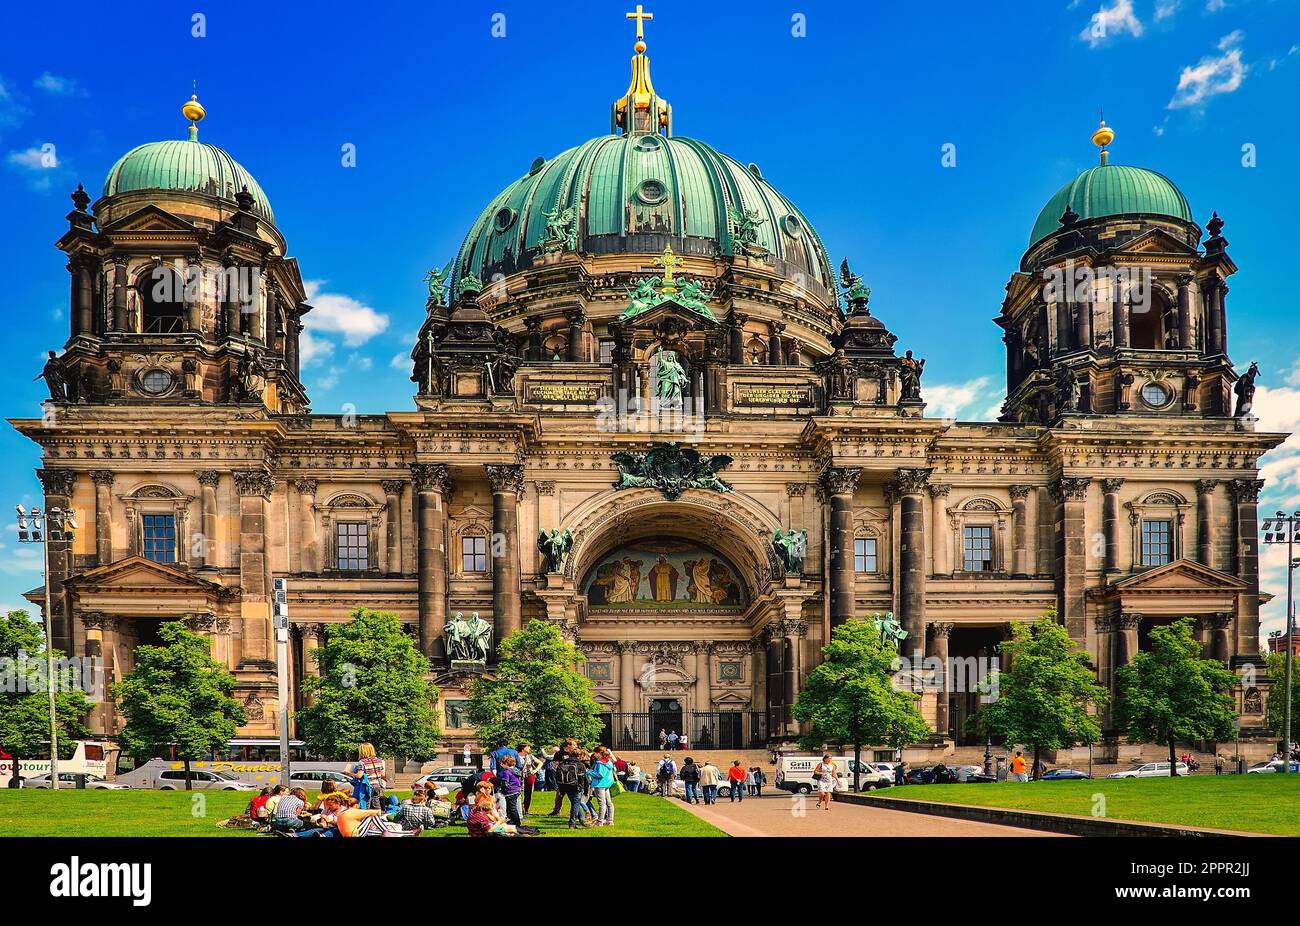 Berlin, Allemagne - 30 avril 2014: Cathédrale de Berlin, Allemagne. L'un des monuments les plus célèbres, situé sur l'île des musées dans le Banque D'Images